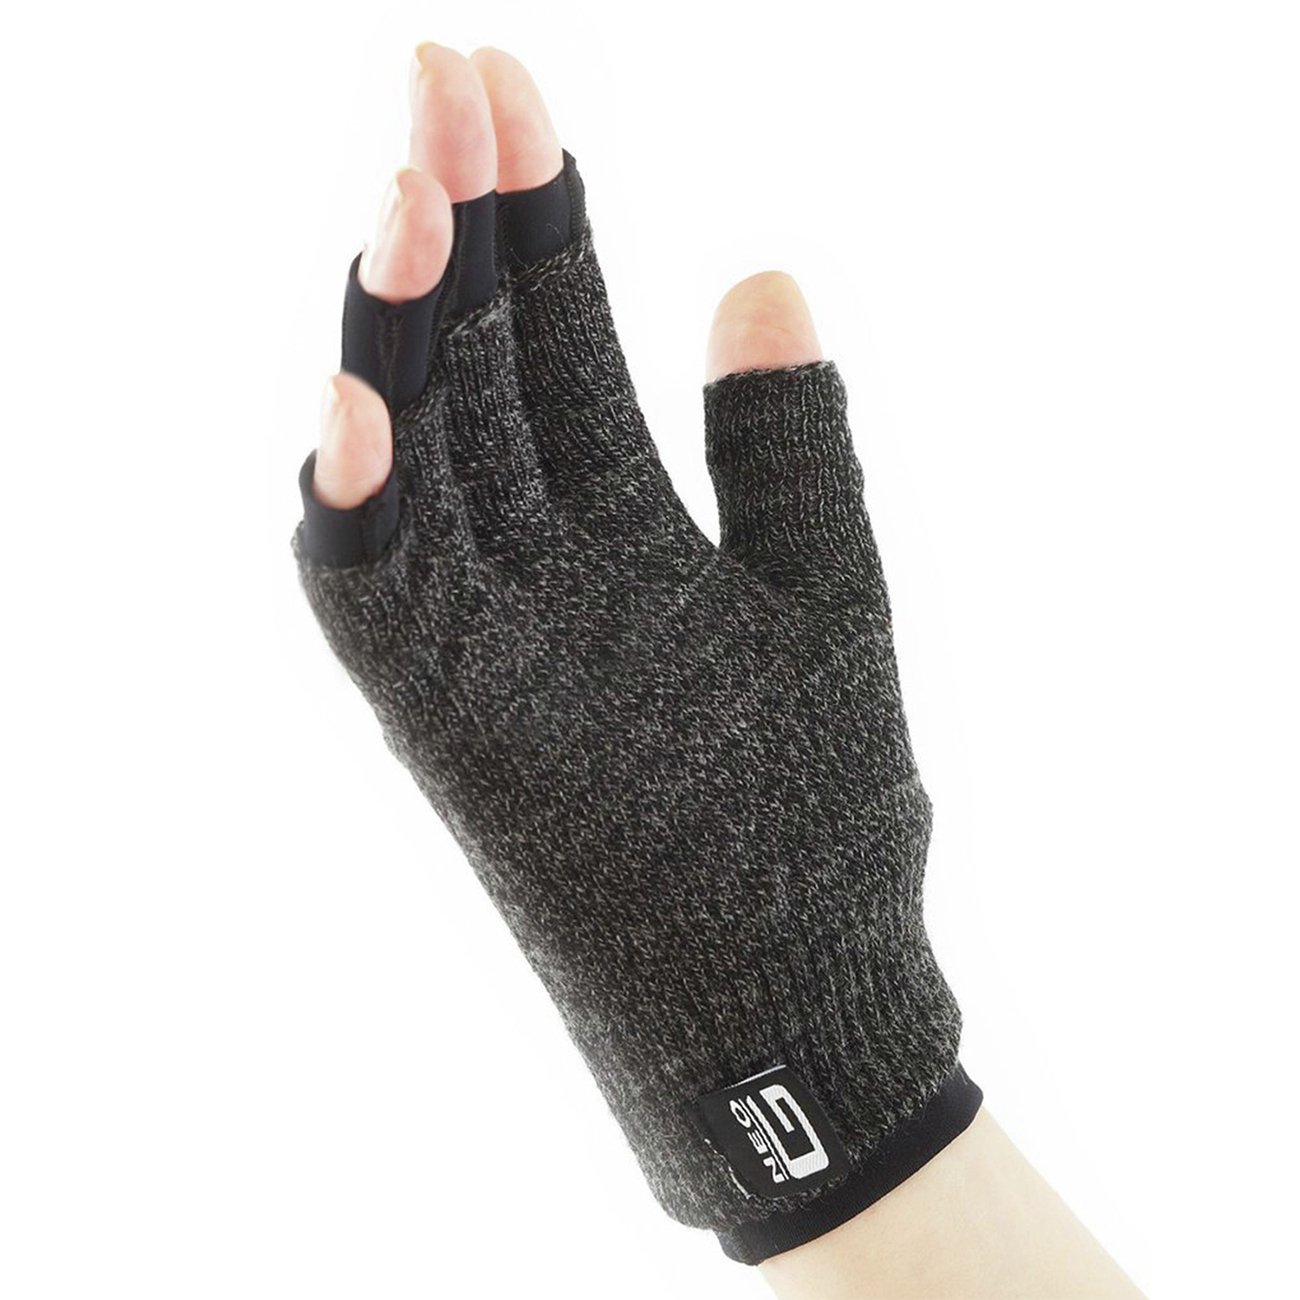 Neo G Pair of Comfort Relief Arthritis Gloves - Medium